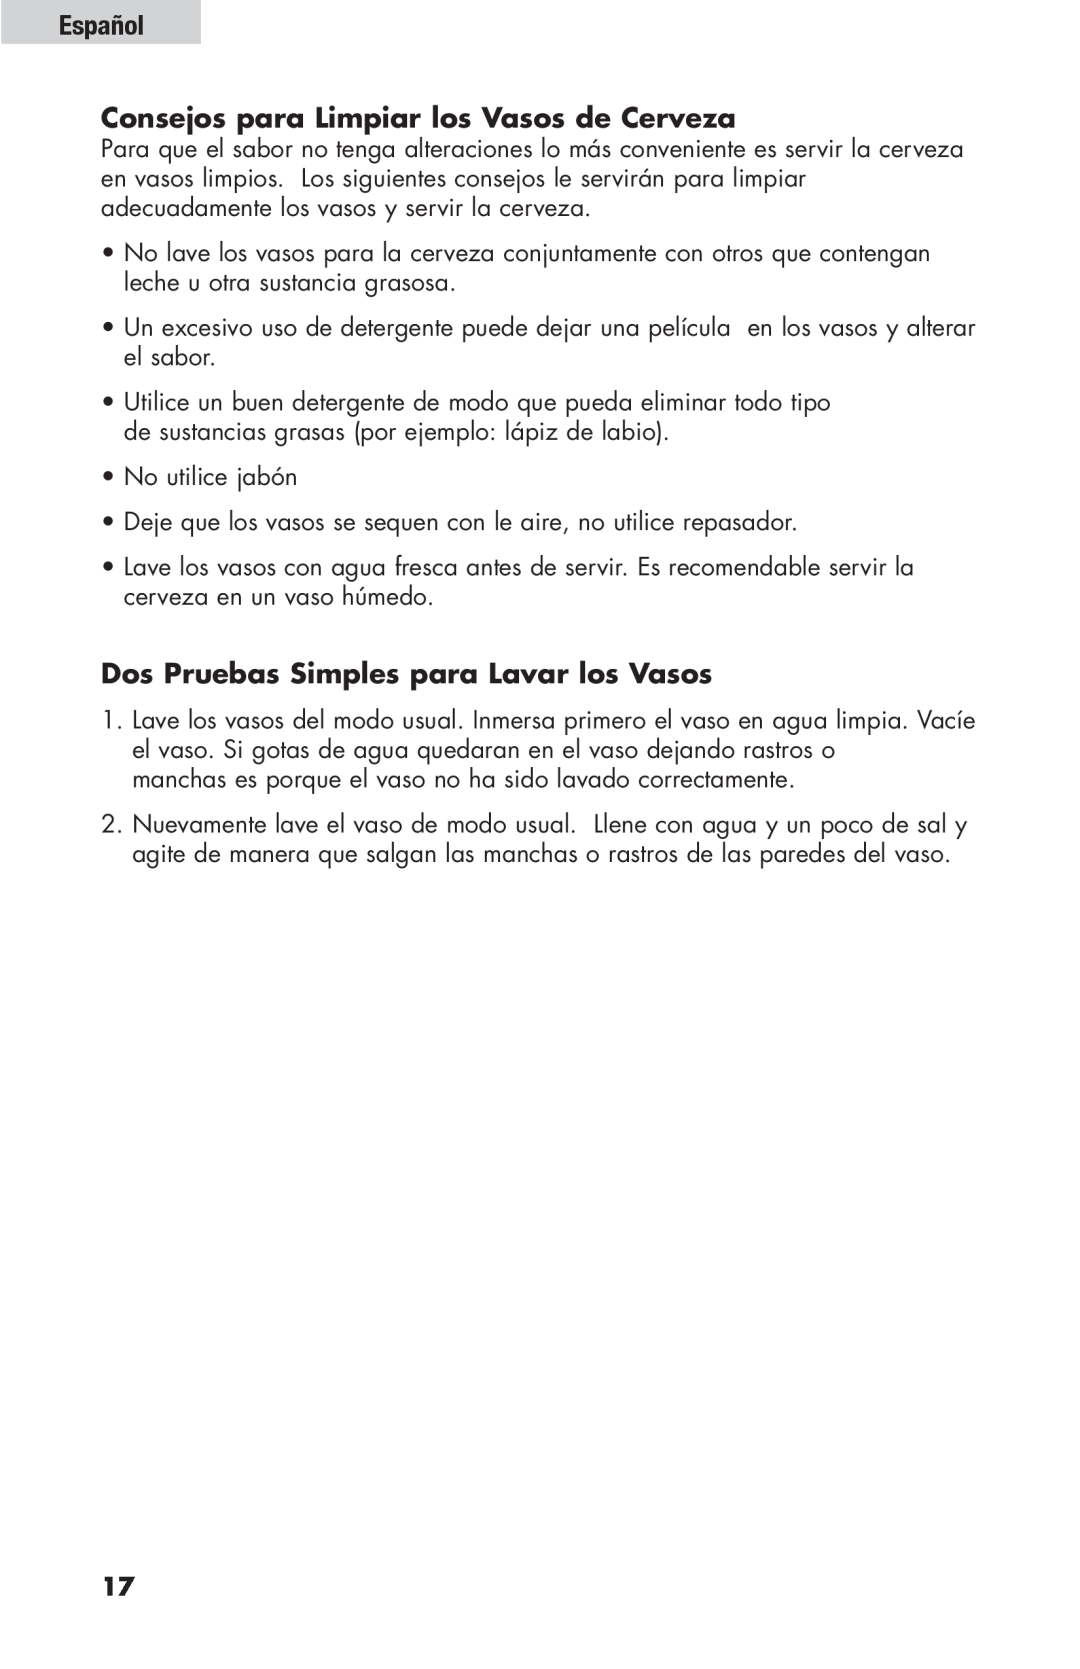 Haier HBF205E user manual Español Consejos para Limpiar los Vasos de Cerveza, Dos Pruebas Simples para Lavar los Vasos 